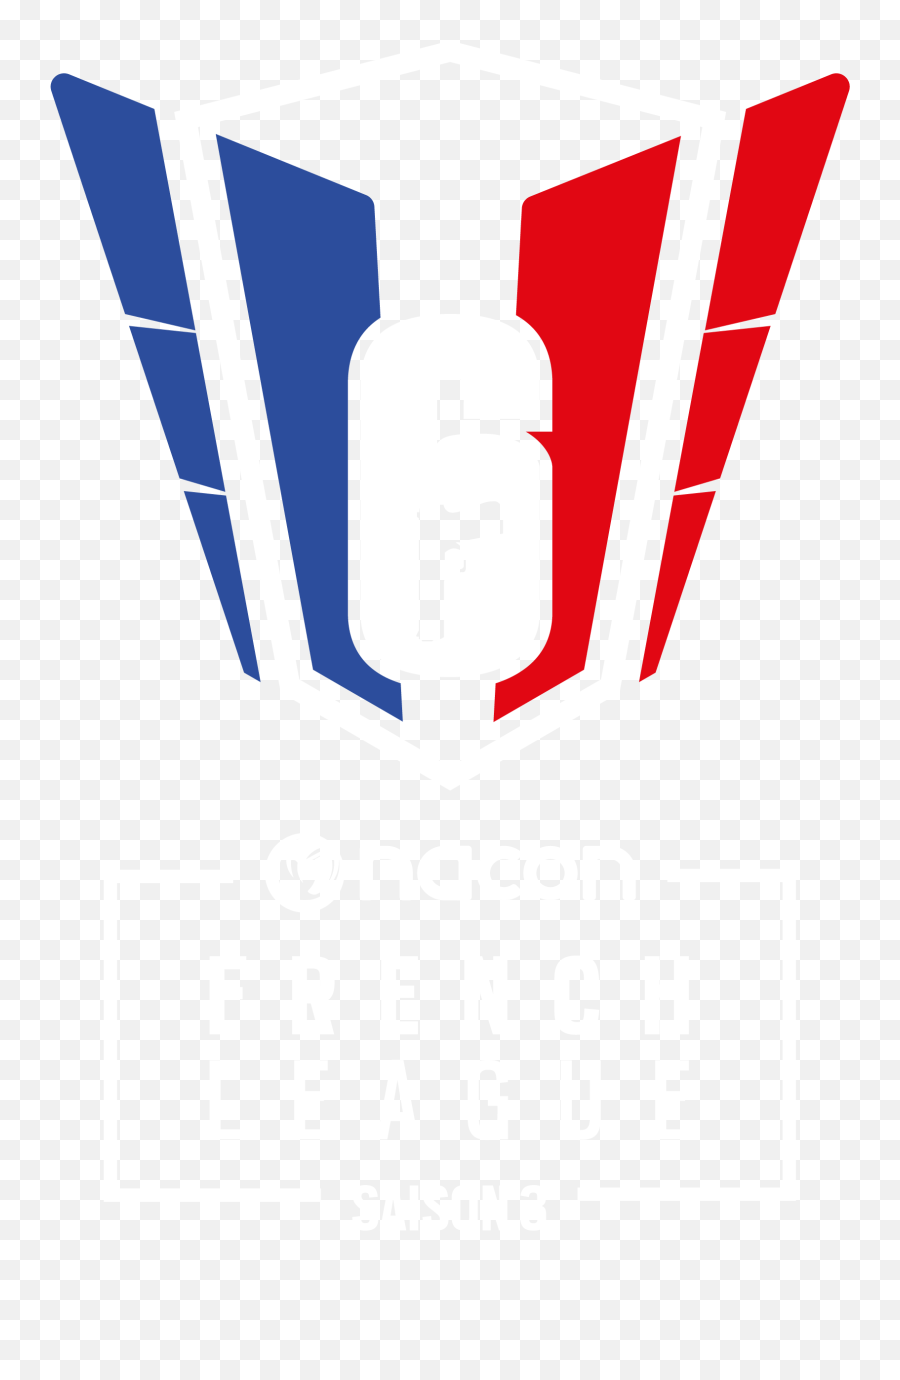 French League Rainbow Six Siege - R6fl Emoji,Rainbow 6 Logo